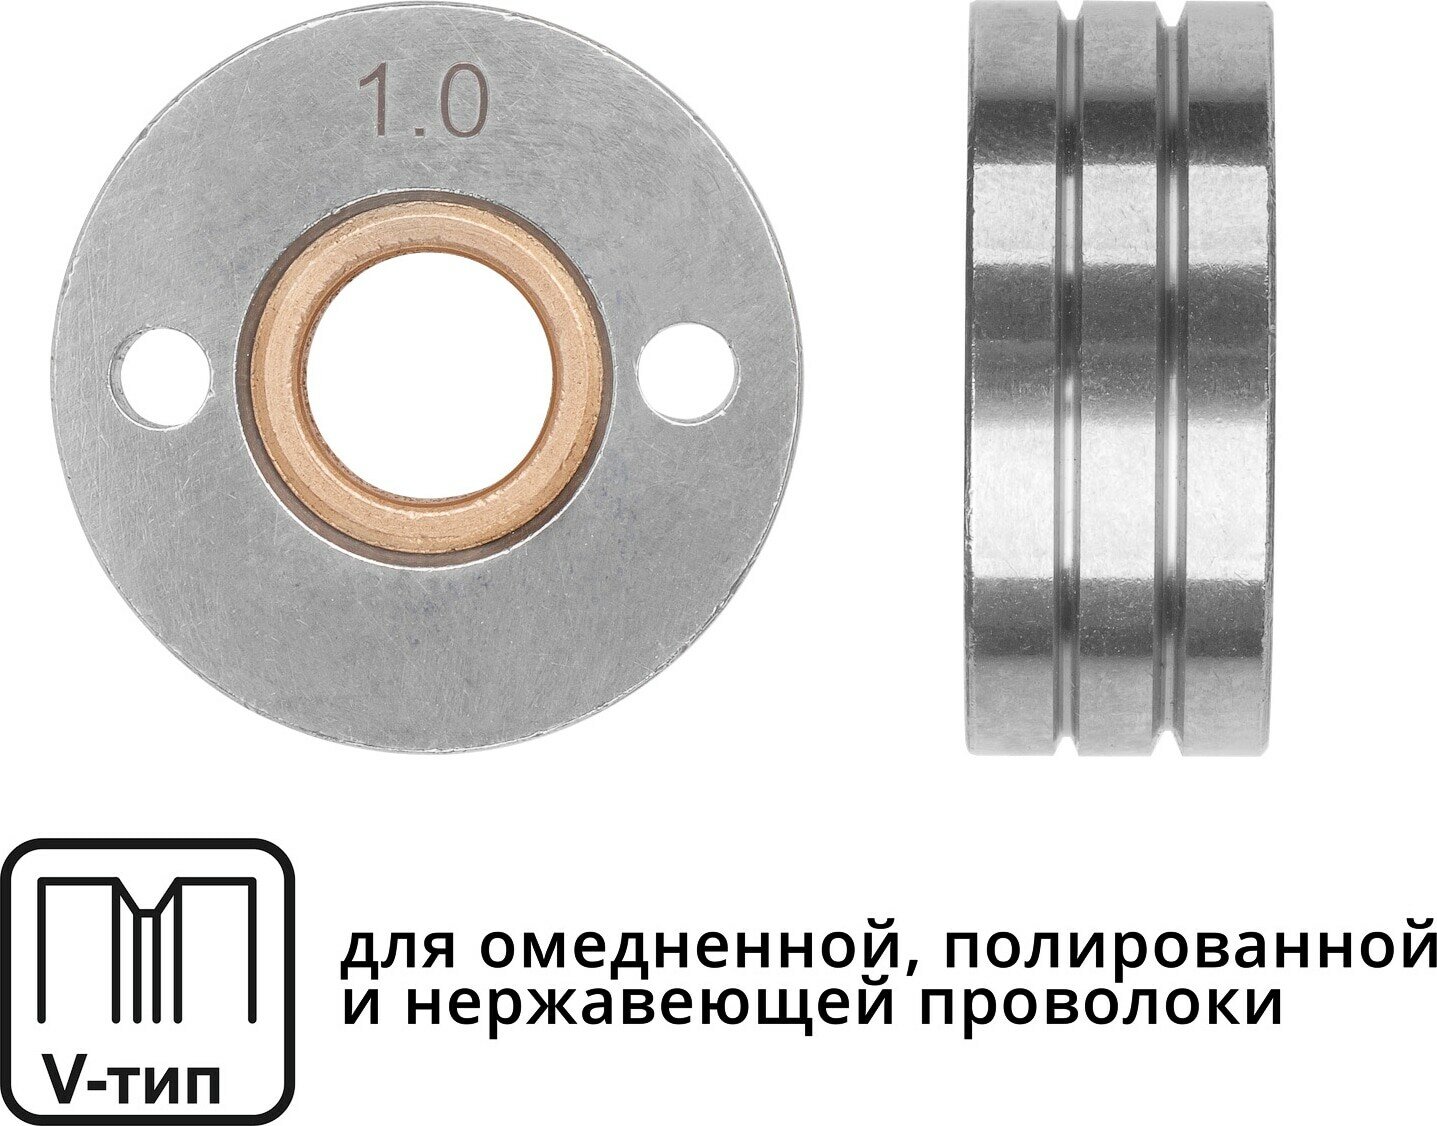 Ролик подающий ф 30/10 мм шир. 12 мм проволока ф 10-12 мм (V-тип) (для твердой проволоки: омедненная полированная нержавеющая) (WA-2437) (SOLARI